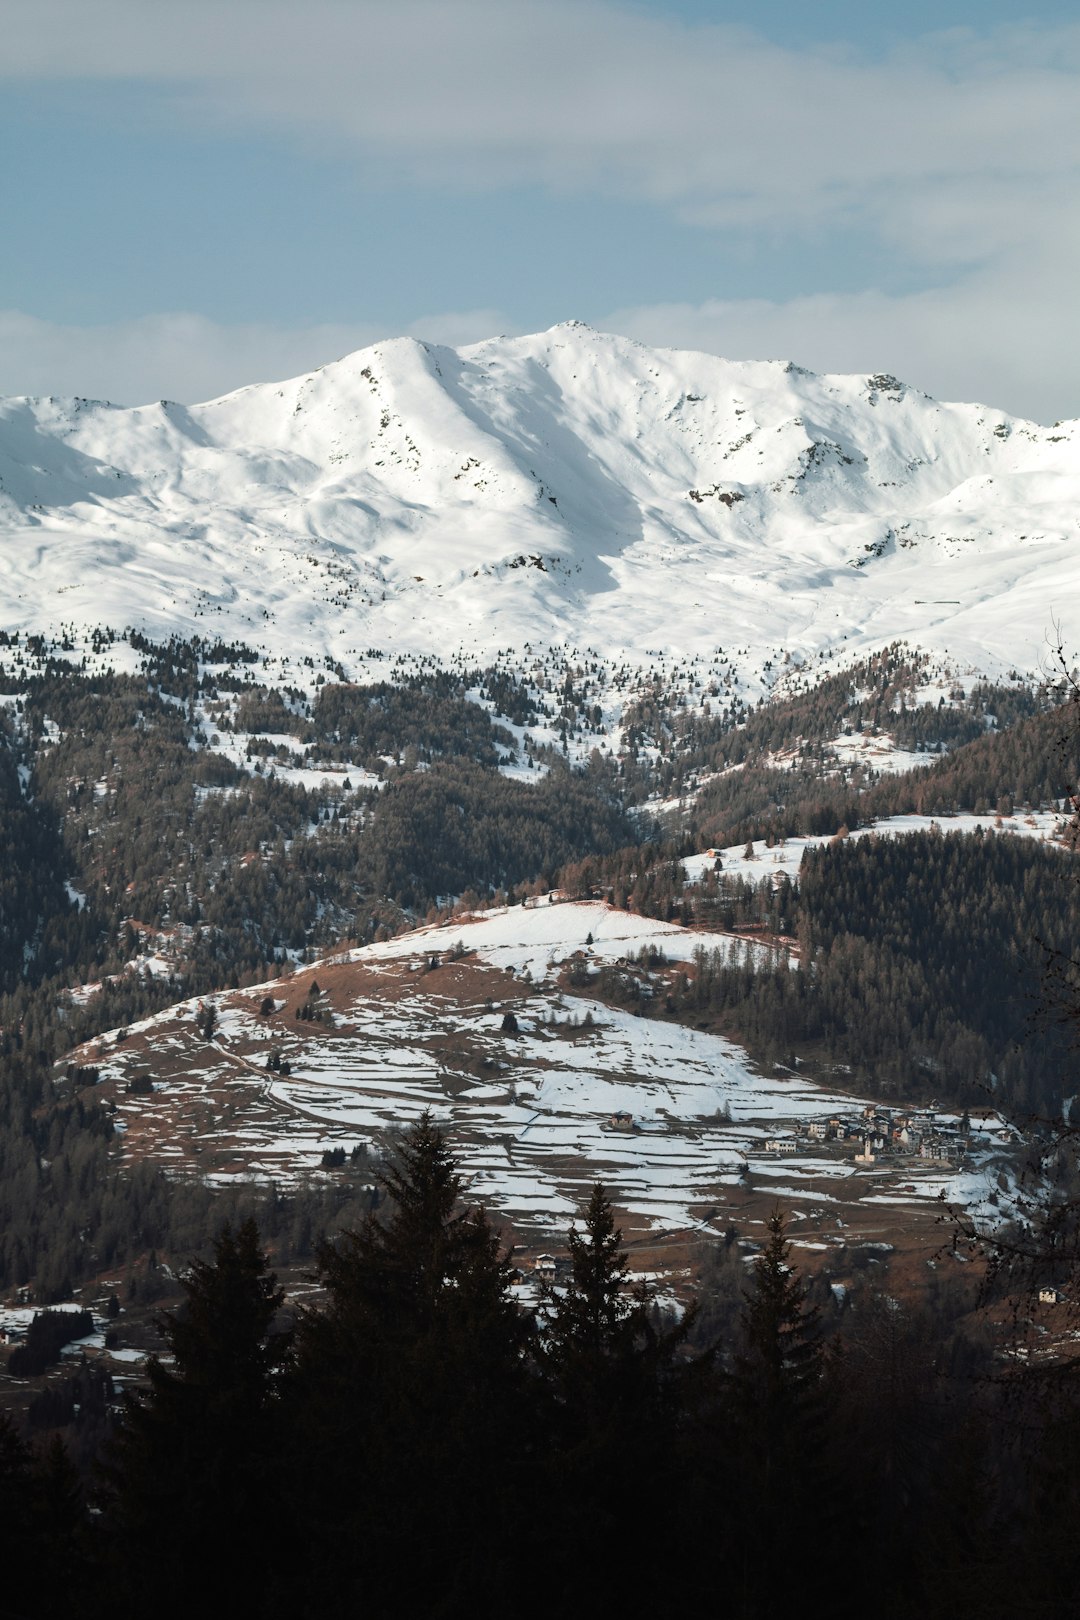 Mountain range photo spot Marilleva 1400 Tovel